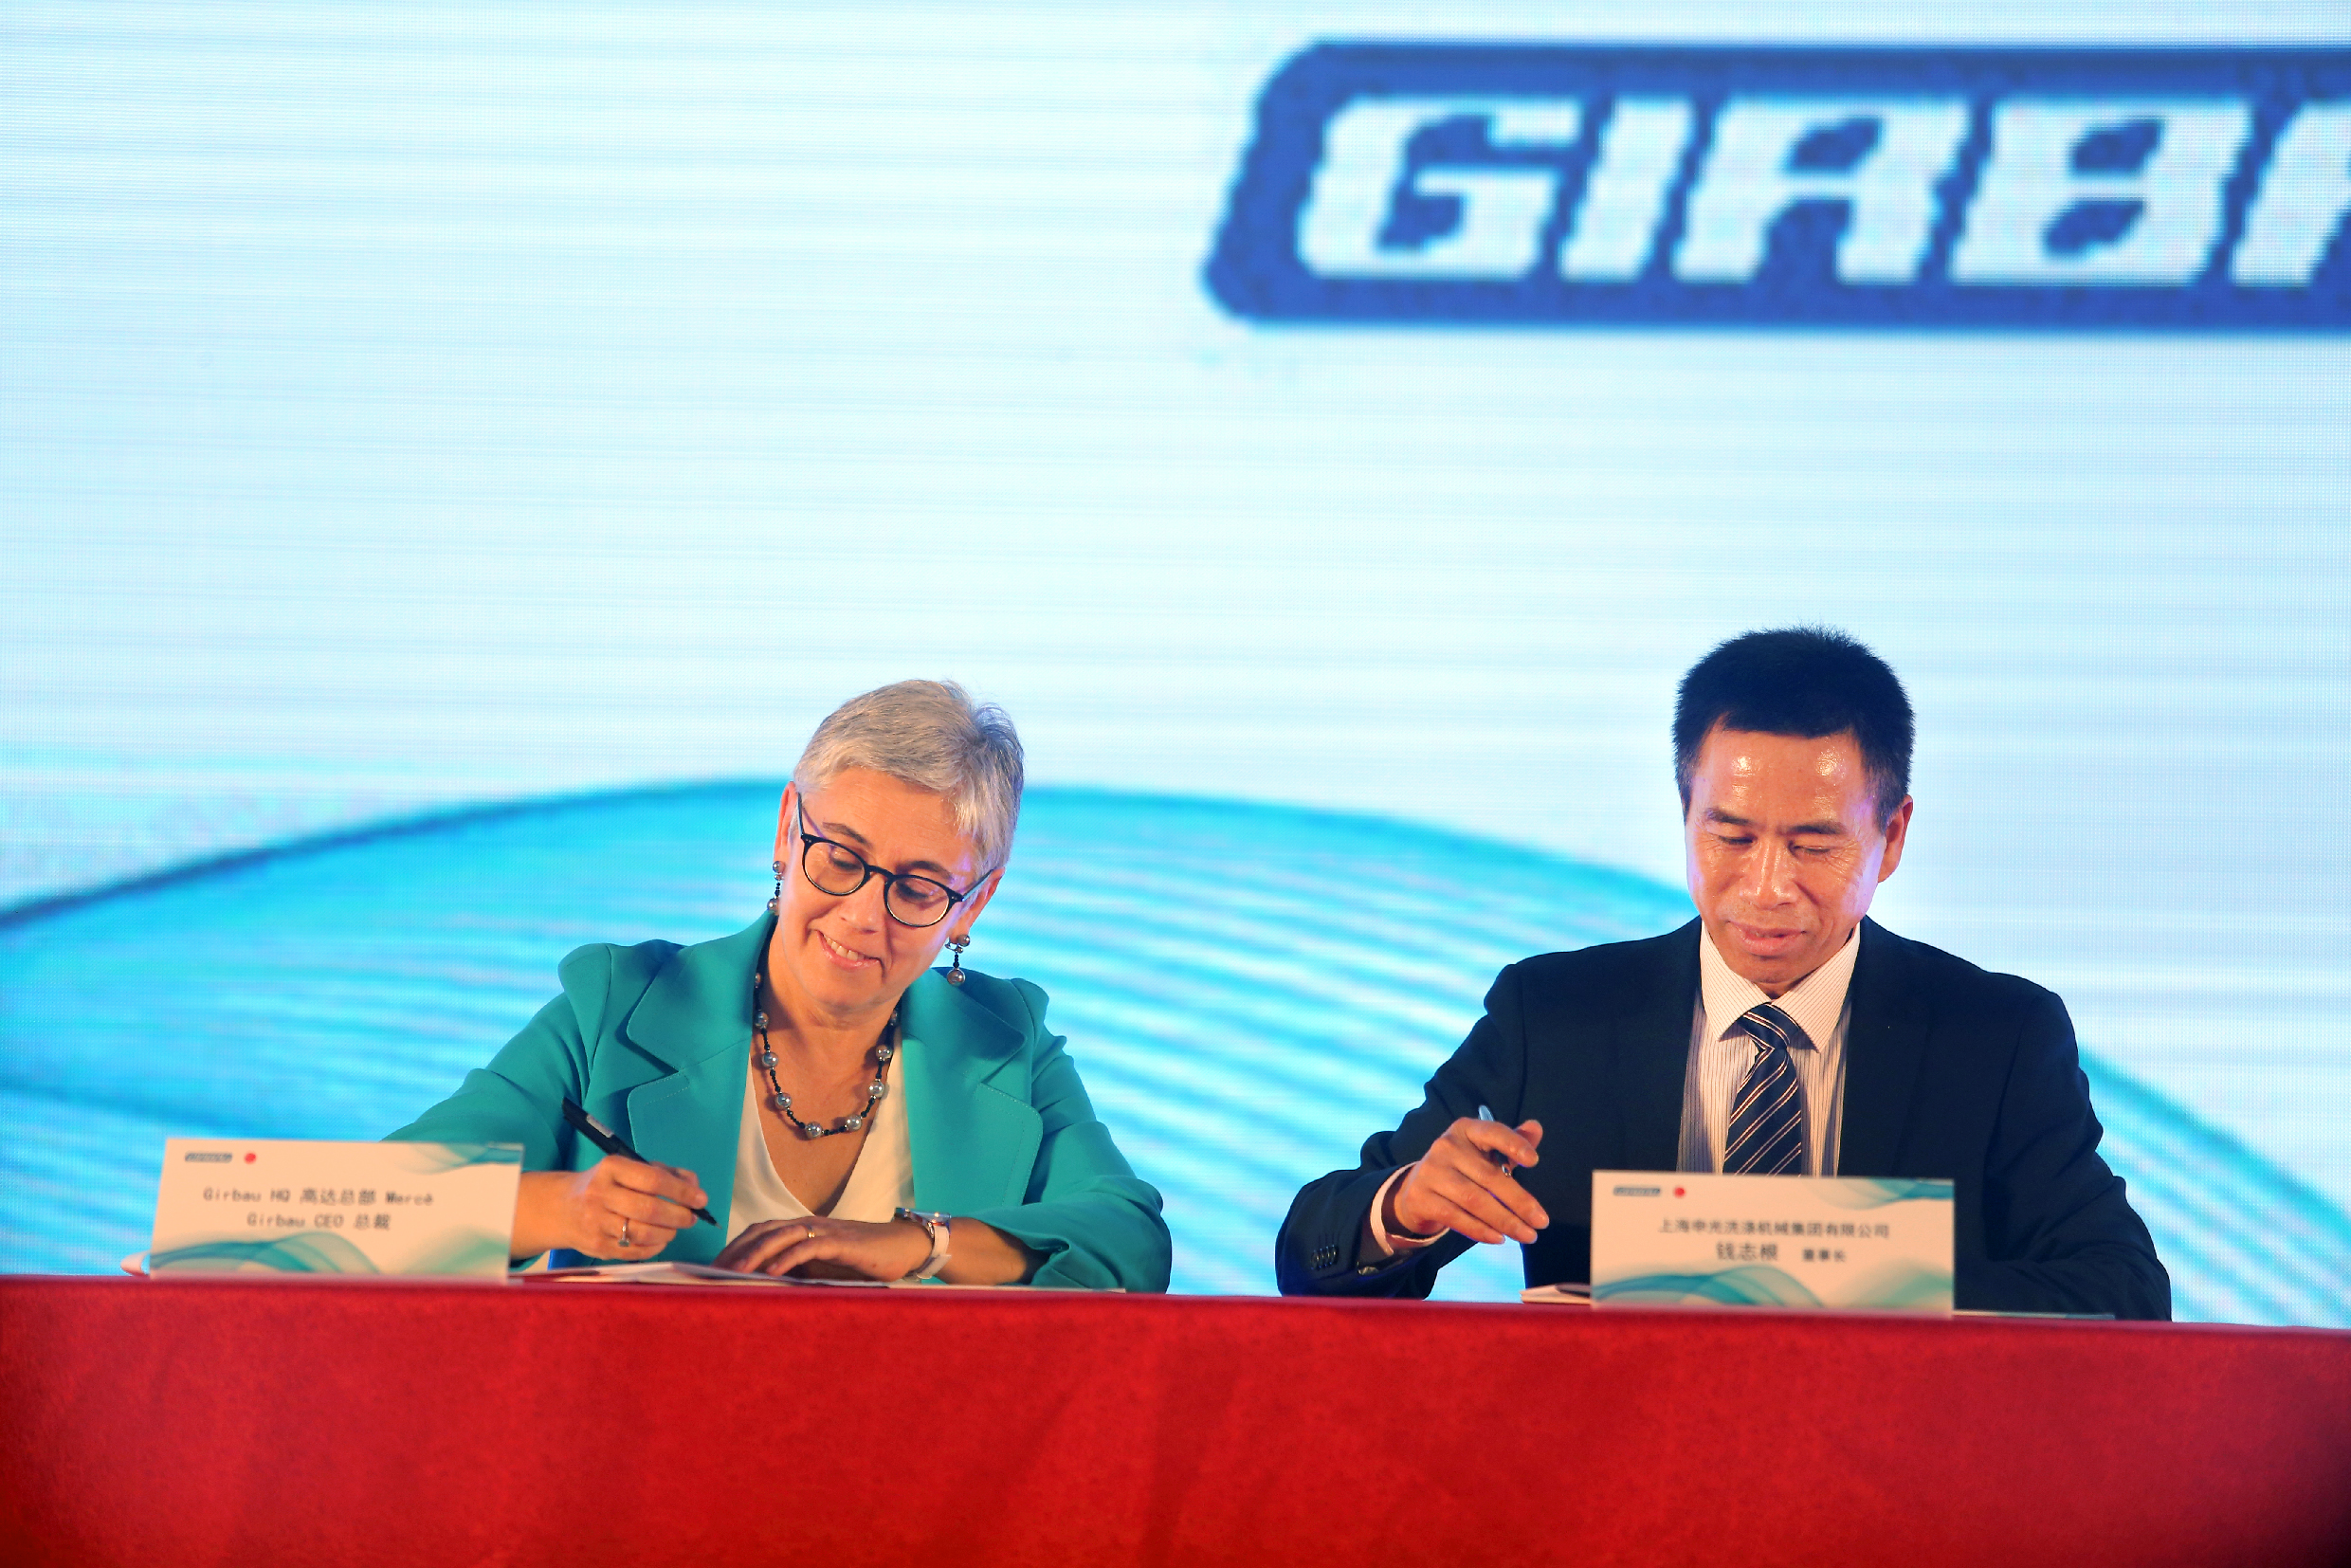 La consellera delegada de l'empresa, Mercè Girbau, signant la joint-venture amb Qian Zhigen, CEO de Shenguang